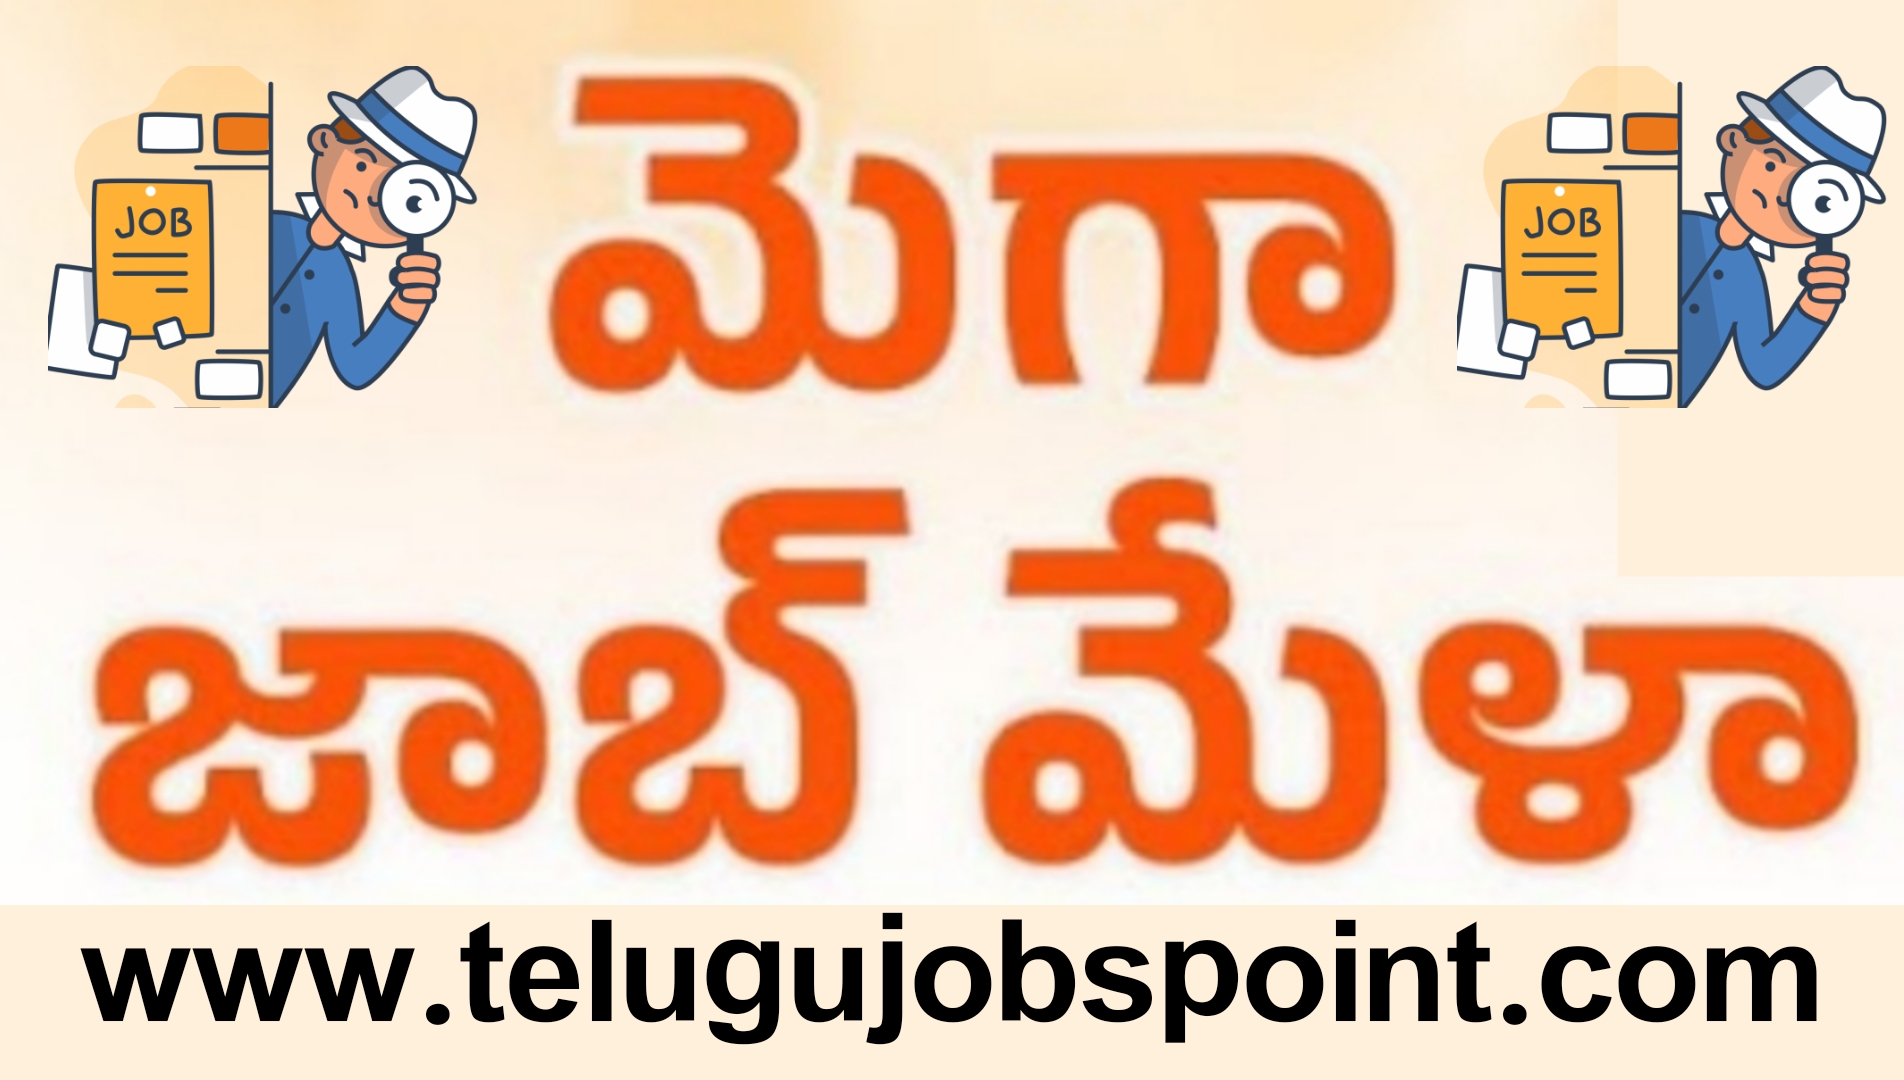 మెగా జాబ్ మేళా 5000 పోస్టుల నియామకాల కోసం దరఖాస్తులు ఆహ్వానం | Mega job Mela job recruitment in Telugu  | GK 15 Telugu  